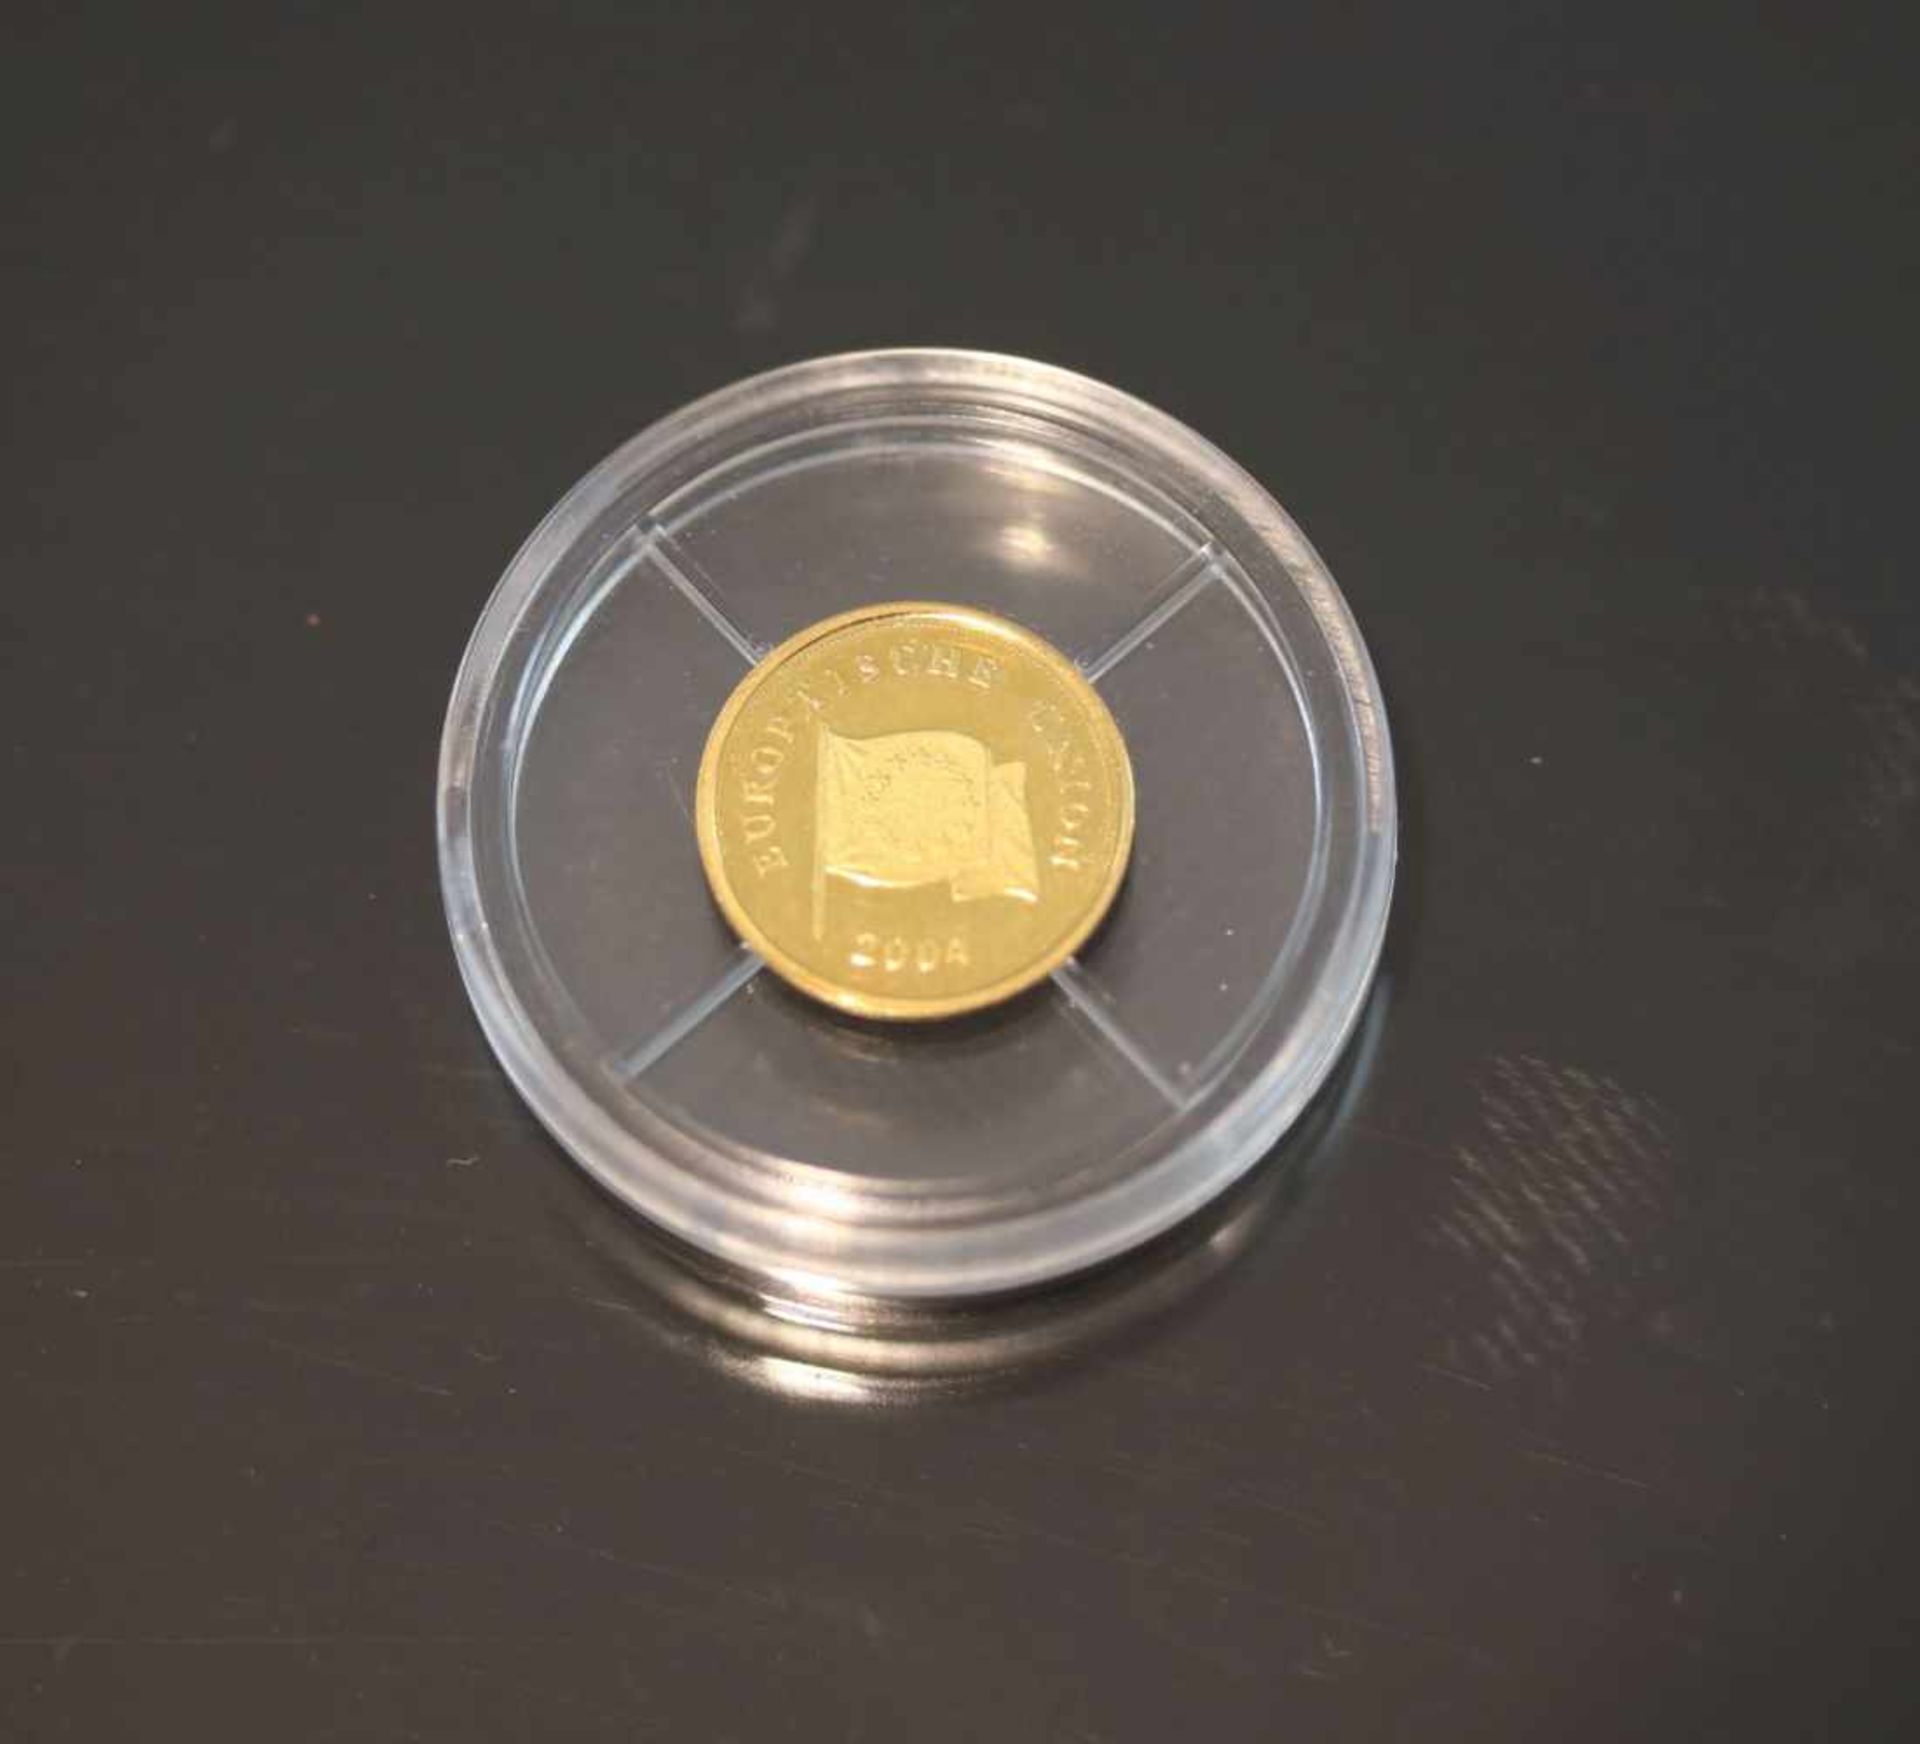 1 MedailleMaterial: GoldGewicht: 0,5 Gramm Europäische Union 2004- - -25.00 % buyer's premium on the